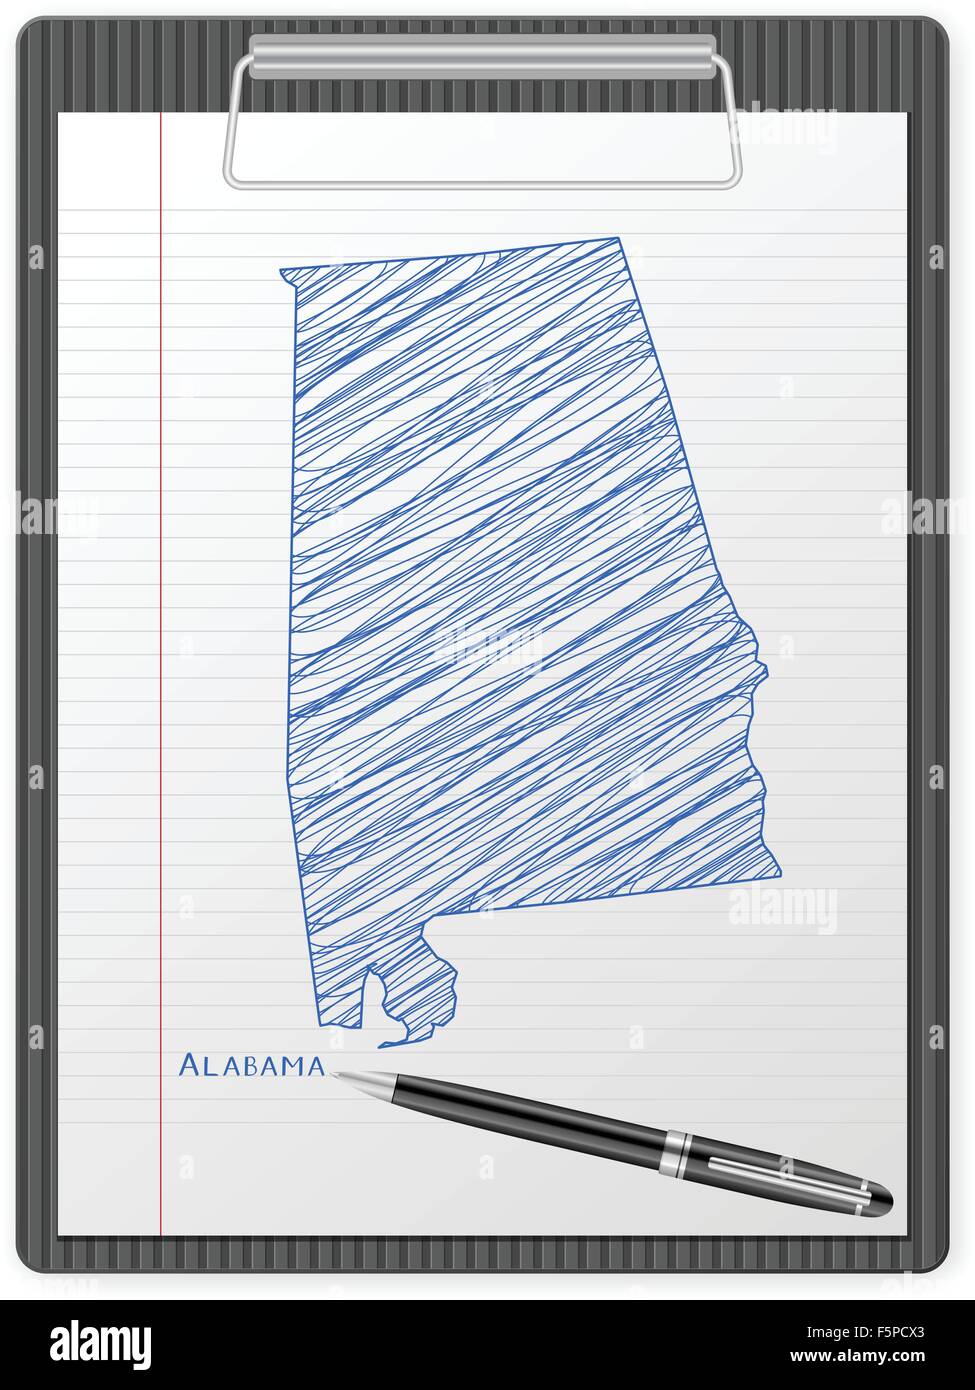 Zwischenablage mit Alabama Karte zeichnen. Vektor-Illustration. Stock Vektor